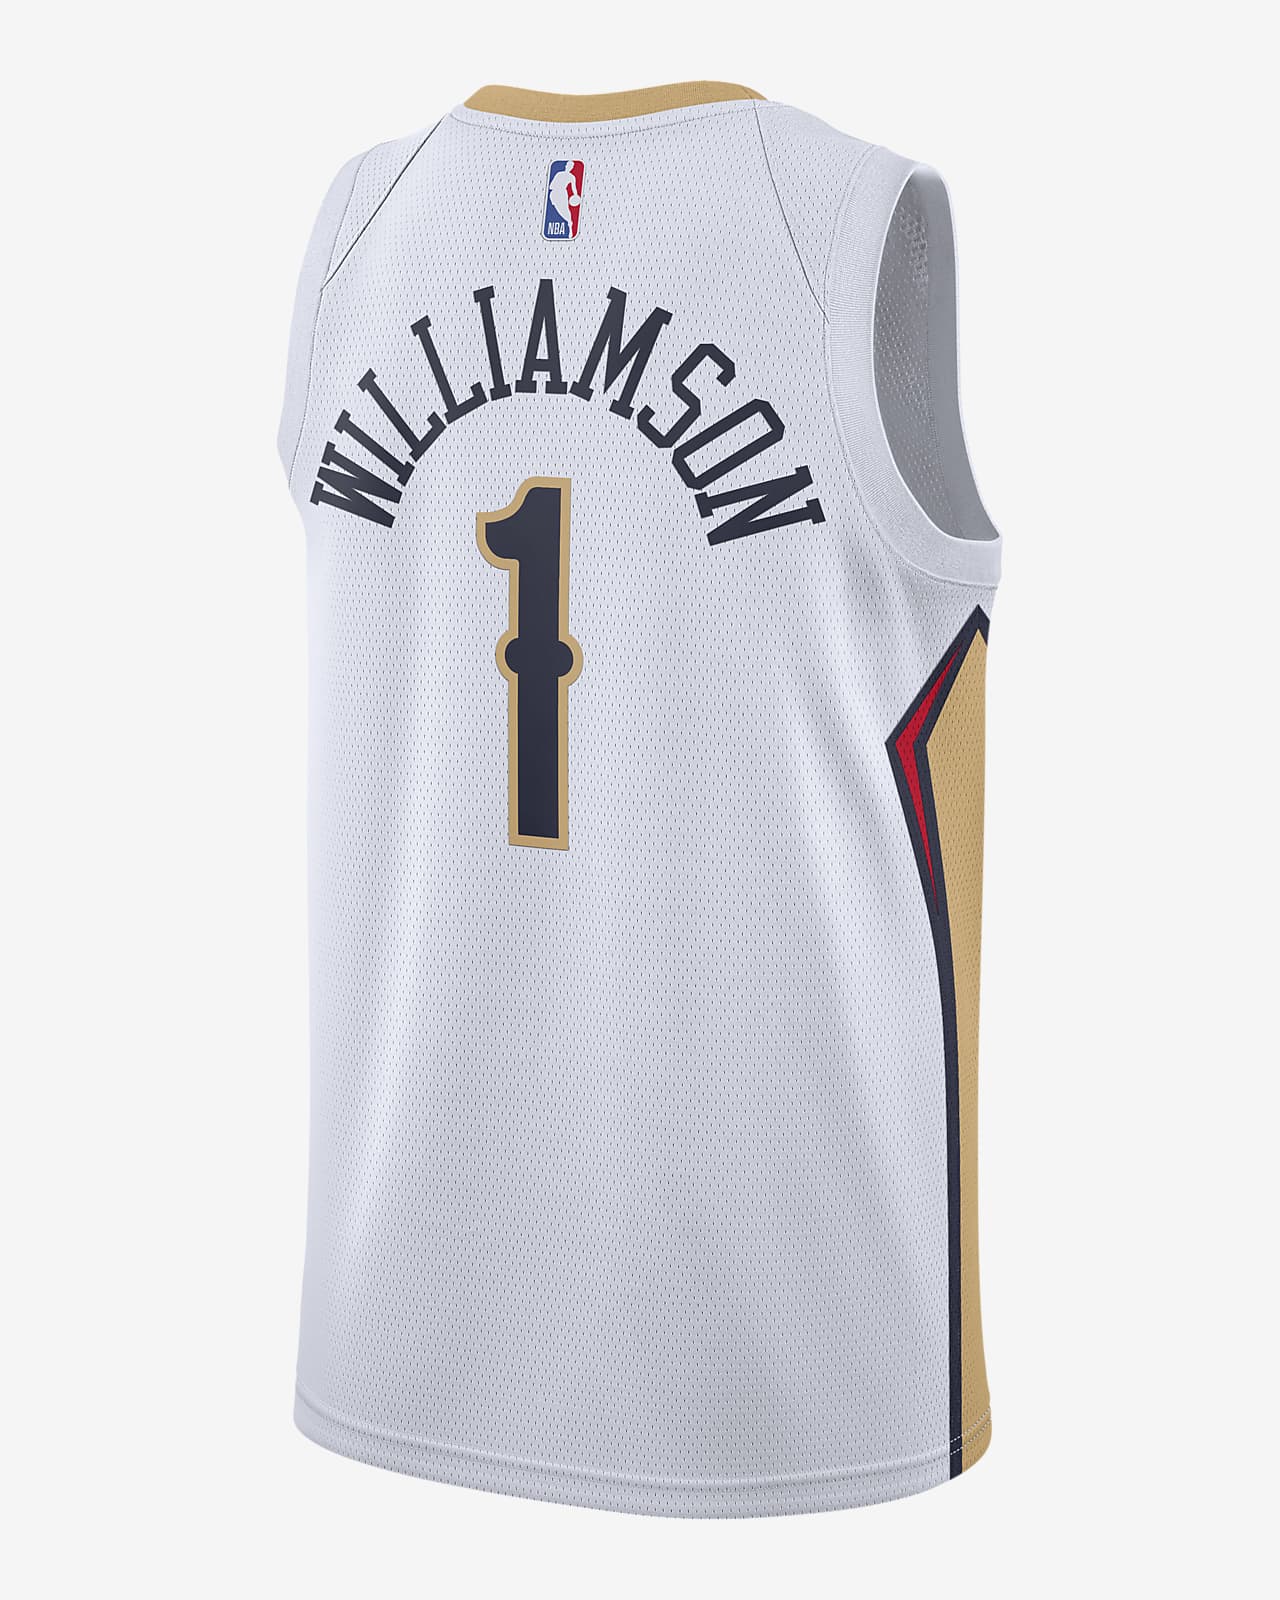 Ontdekking Toneelschrijver privacy Zion Williamson Pelicans Association Edition 2020 Nike NBA Swingman Jersey.  Nike.com